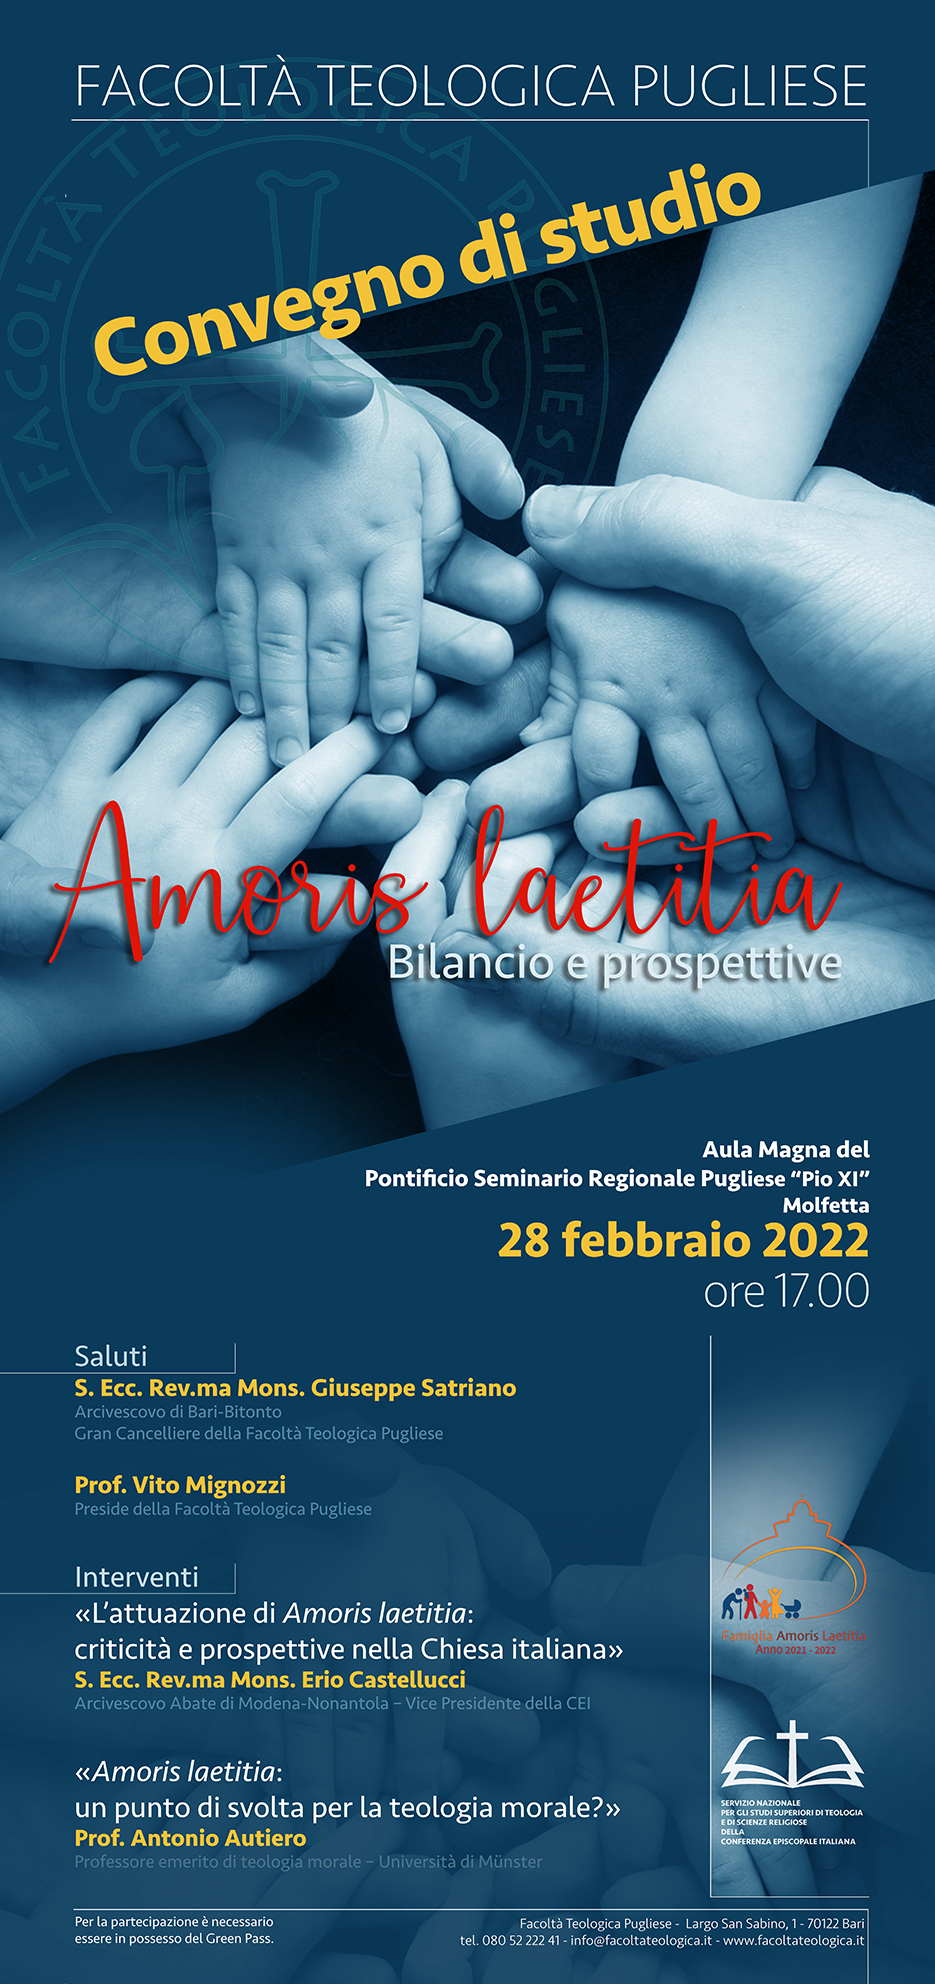 Convegno di Studi
Amoris laetitia - Bilancio e Prospettive
28 febbraio 2022